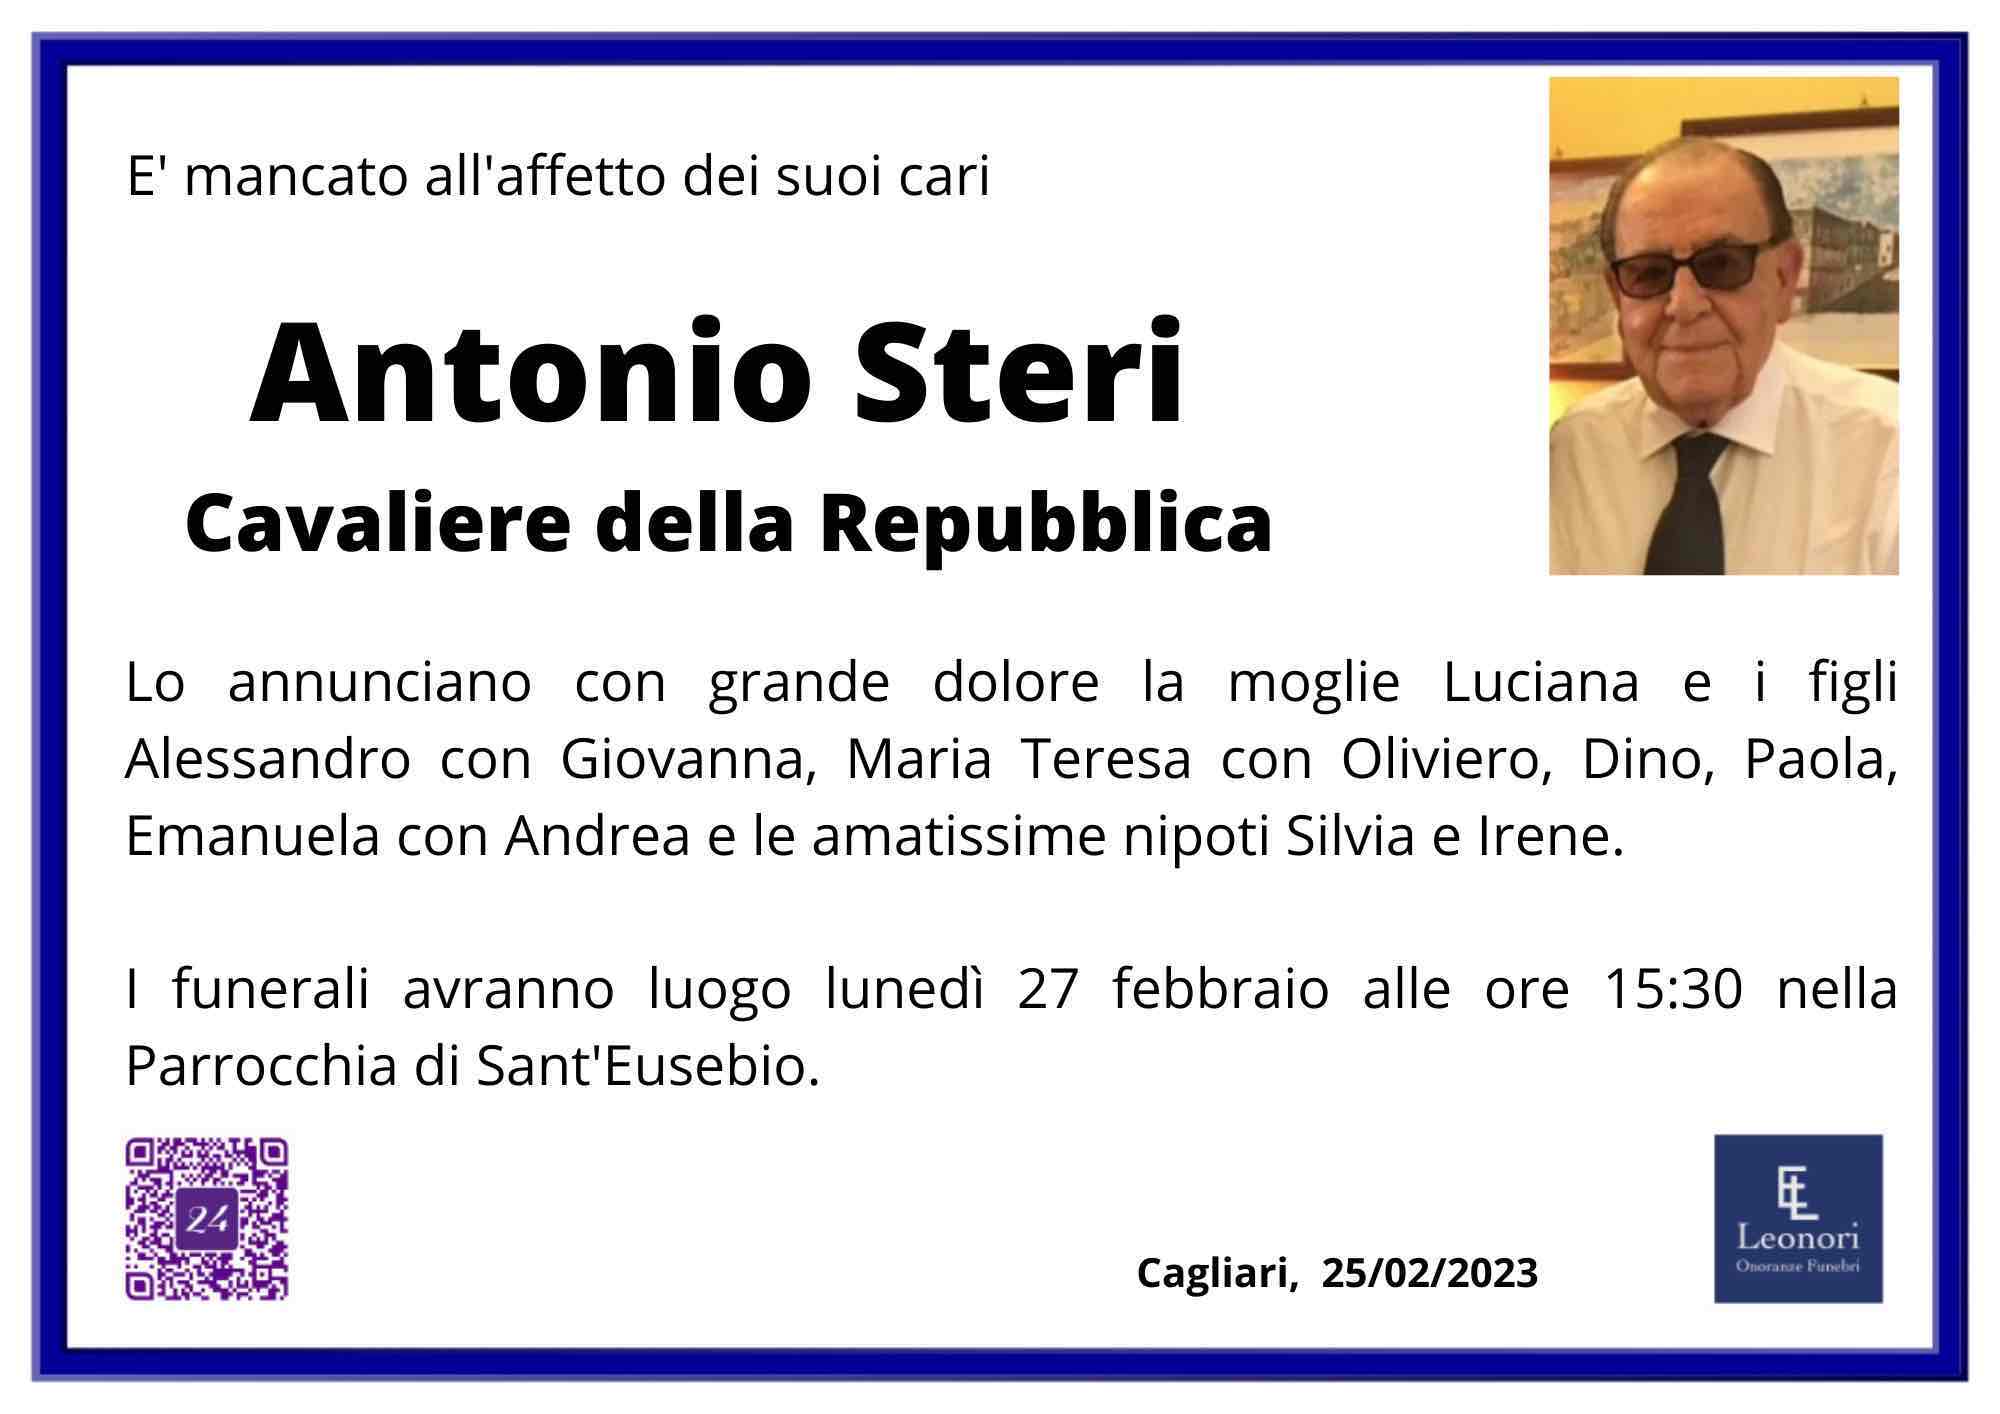 Antonio Steri